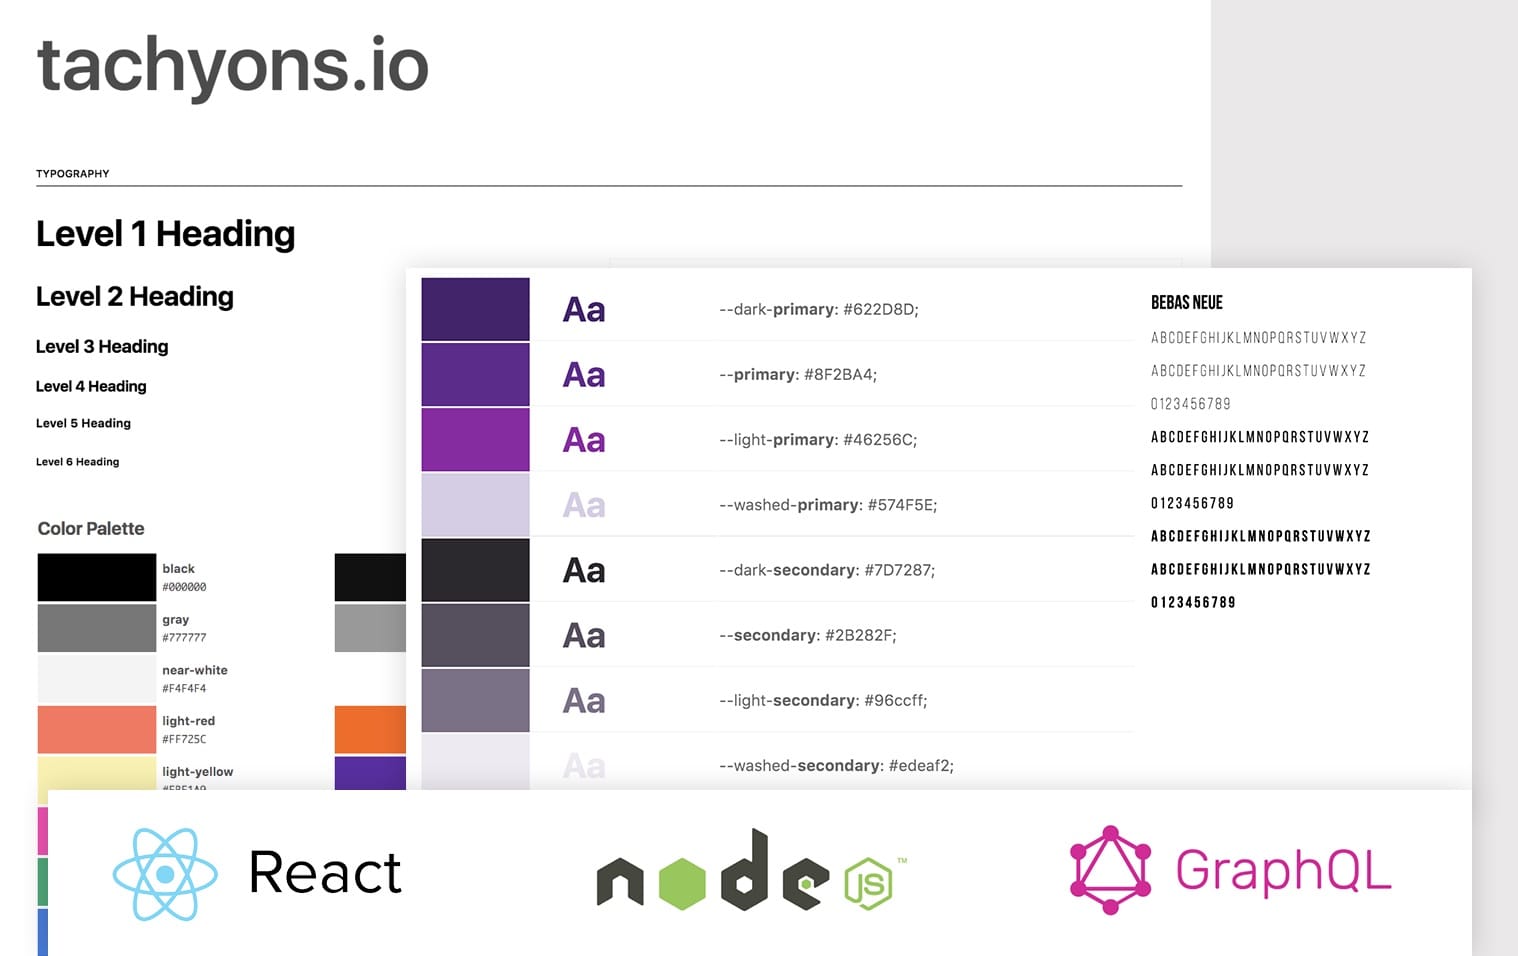 Tecnologias: React, node.js, GraphQL, Tachyons CSS